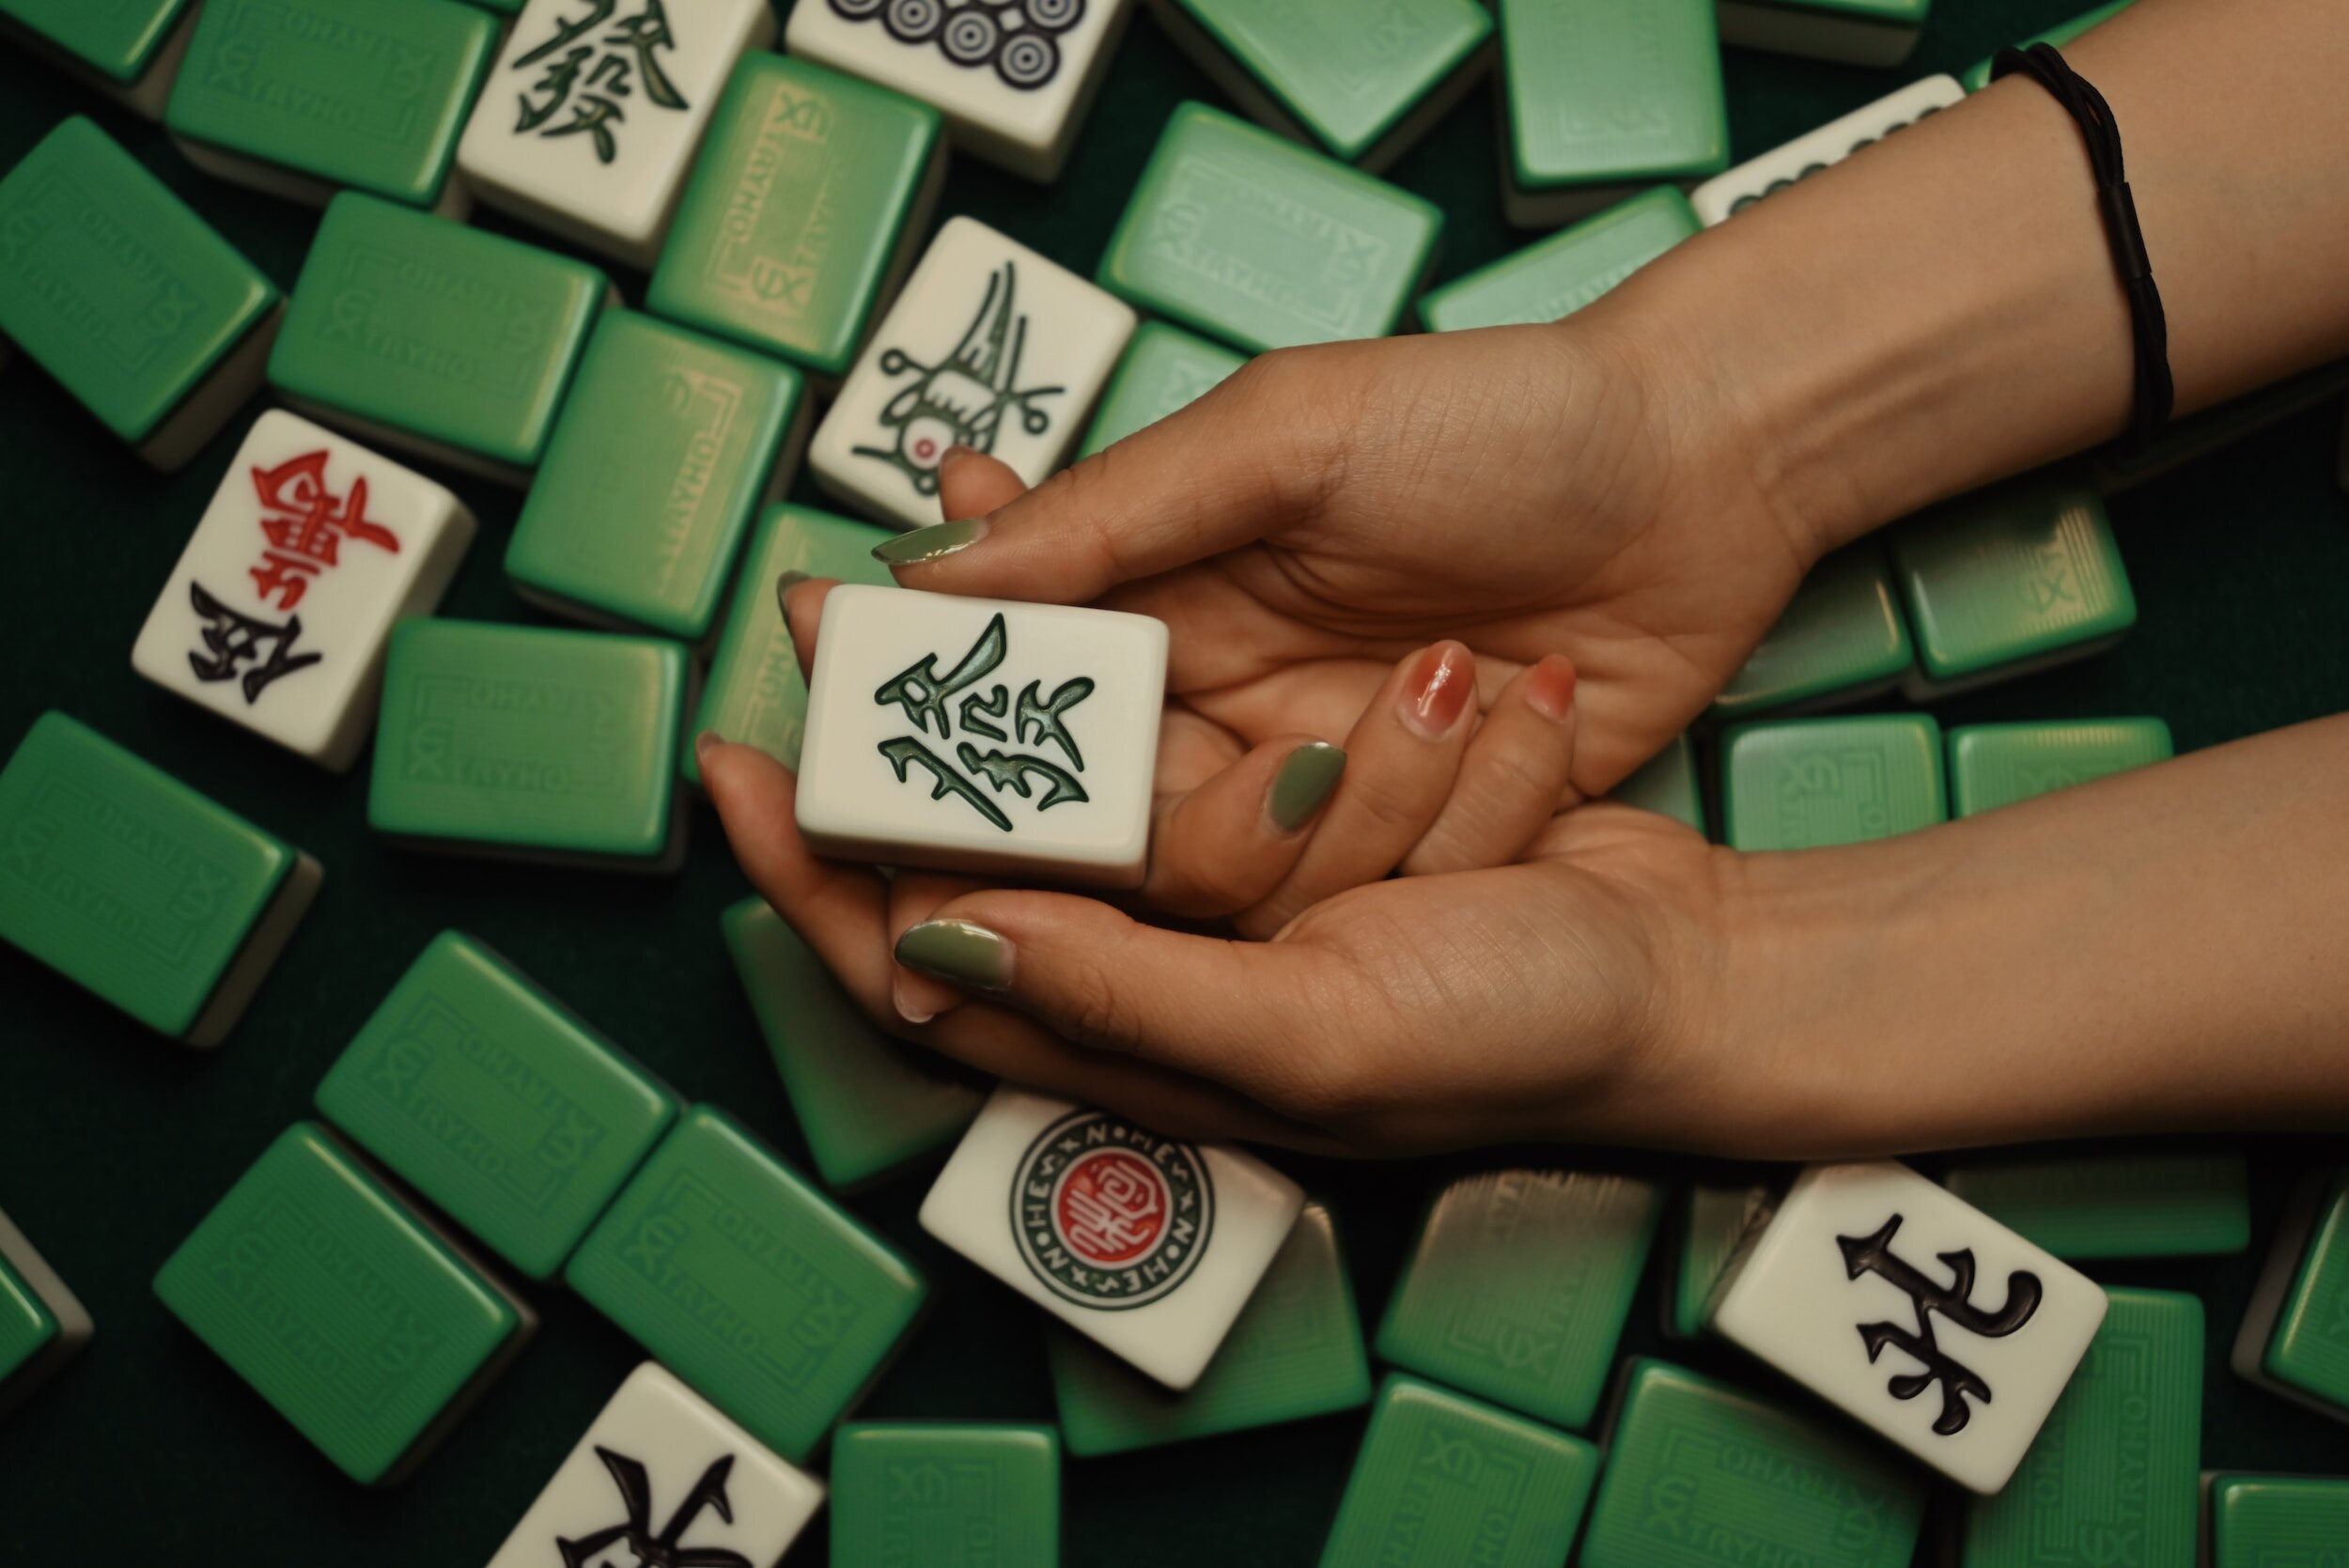 Senet é um dos jogos de tabuleiro mais antigos conhecidos, 3.500